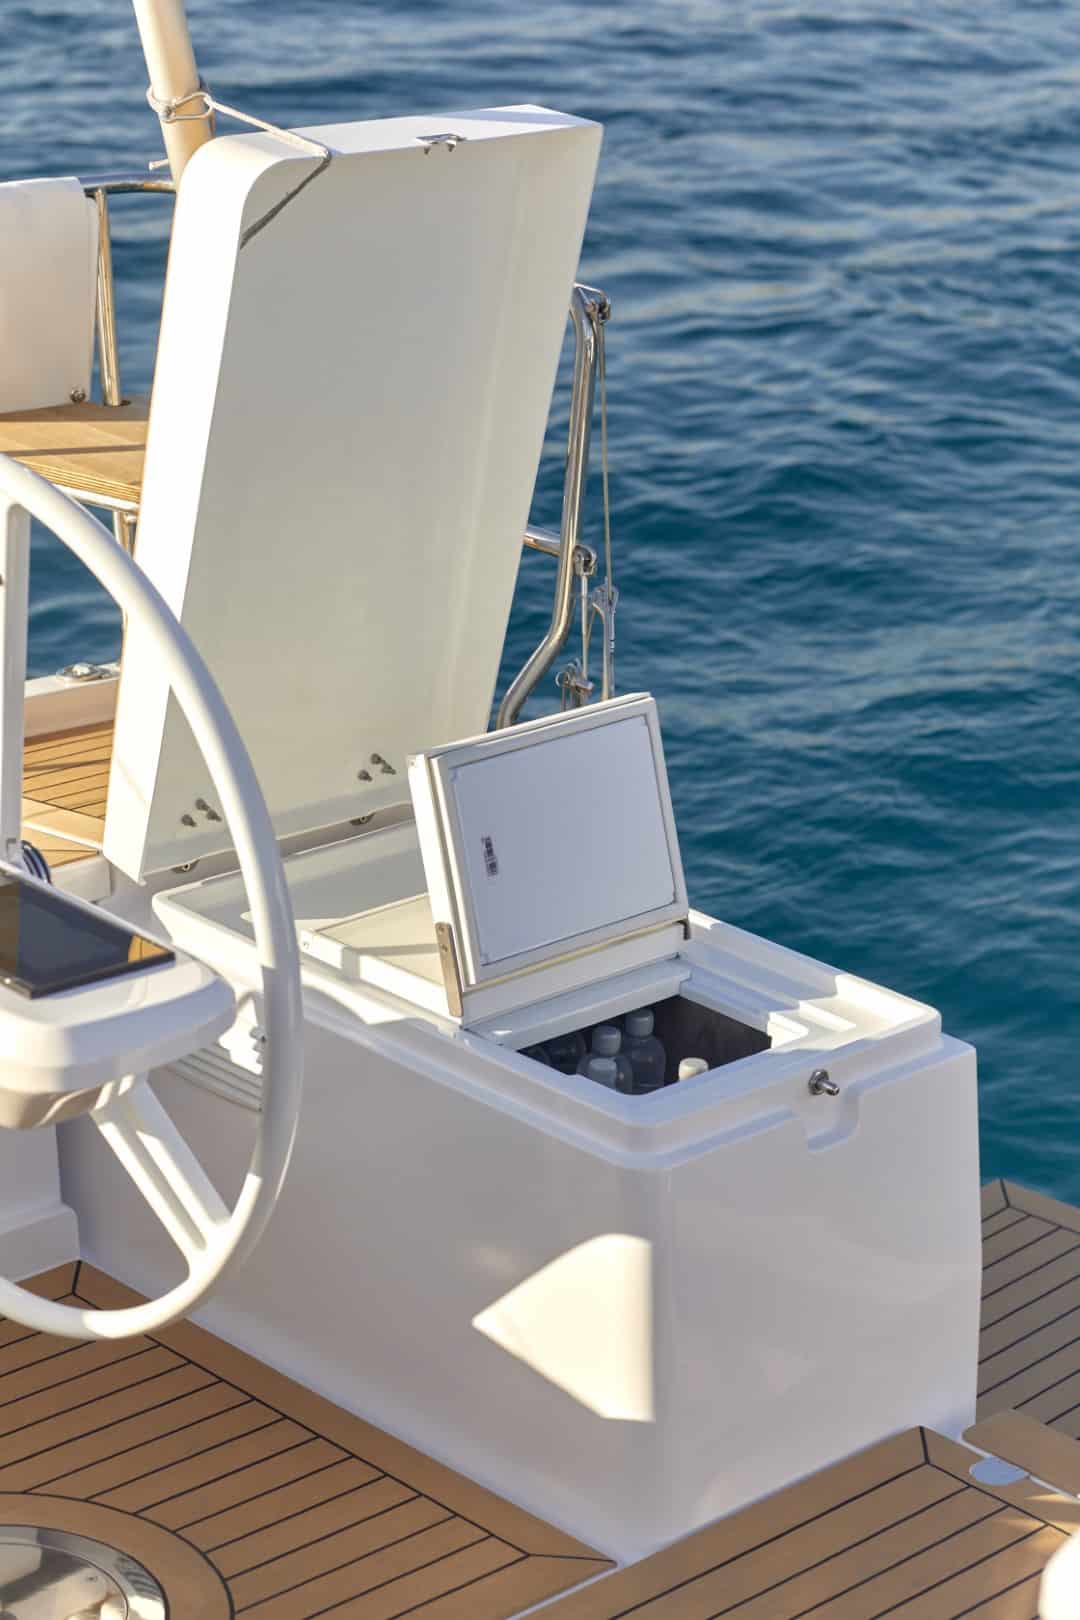 Ein luxuriöses Segelyachtdeck mit eingebauter Kühlbox mit Flaschen neben einem weißen Steuerrad und einem ruhigen blauen Ozean im Hintergrund.